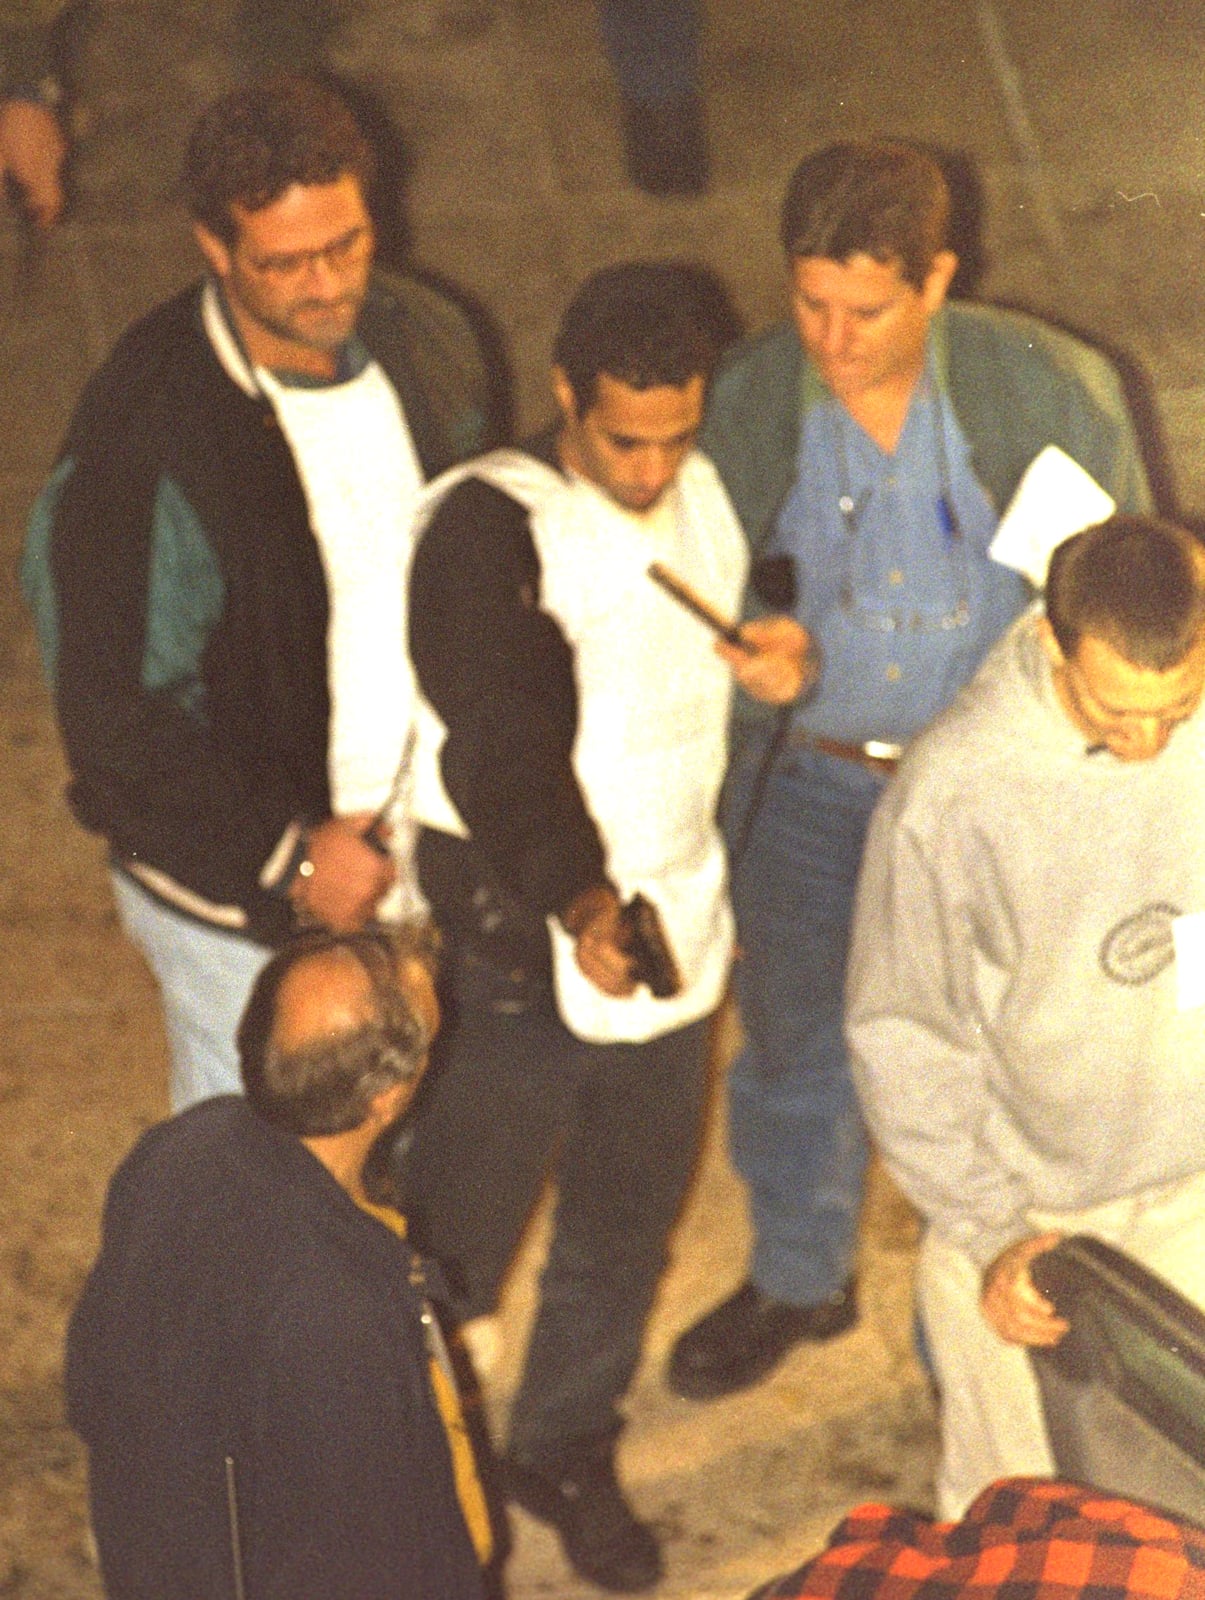 יגאל עמיר משחזר את ההתנקשות בראש הממשלה יצחק רבין. תל-אביב, 7.11.1995 (צילום: נתי הרניק, לע"מ)